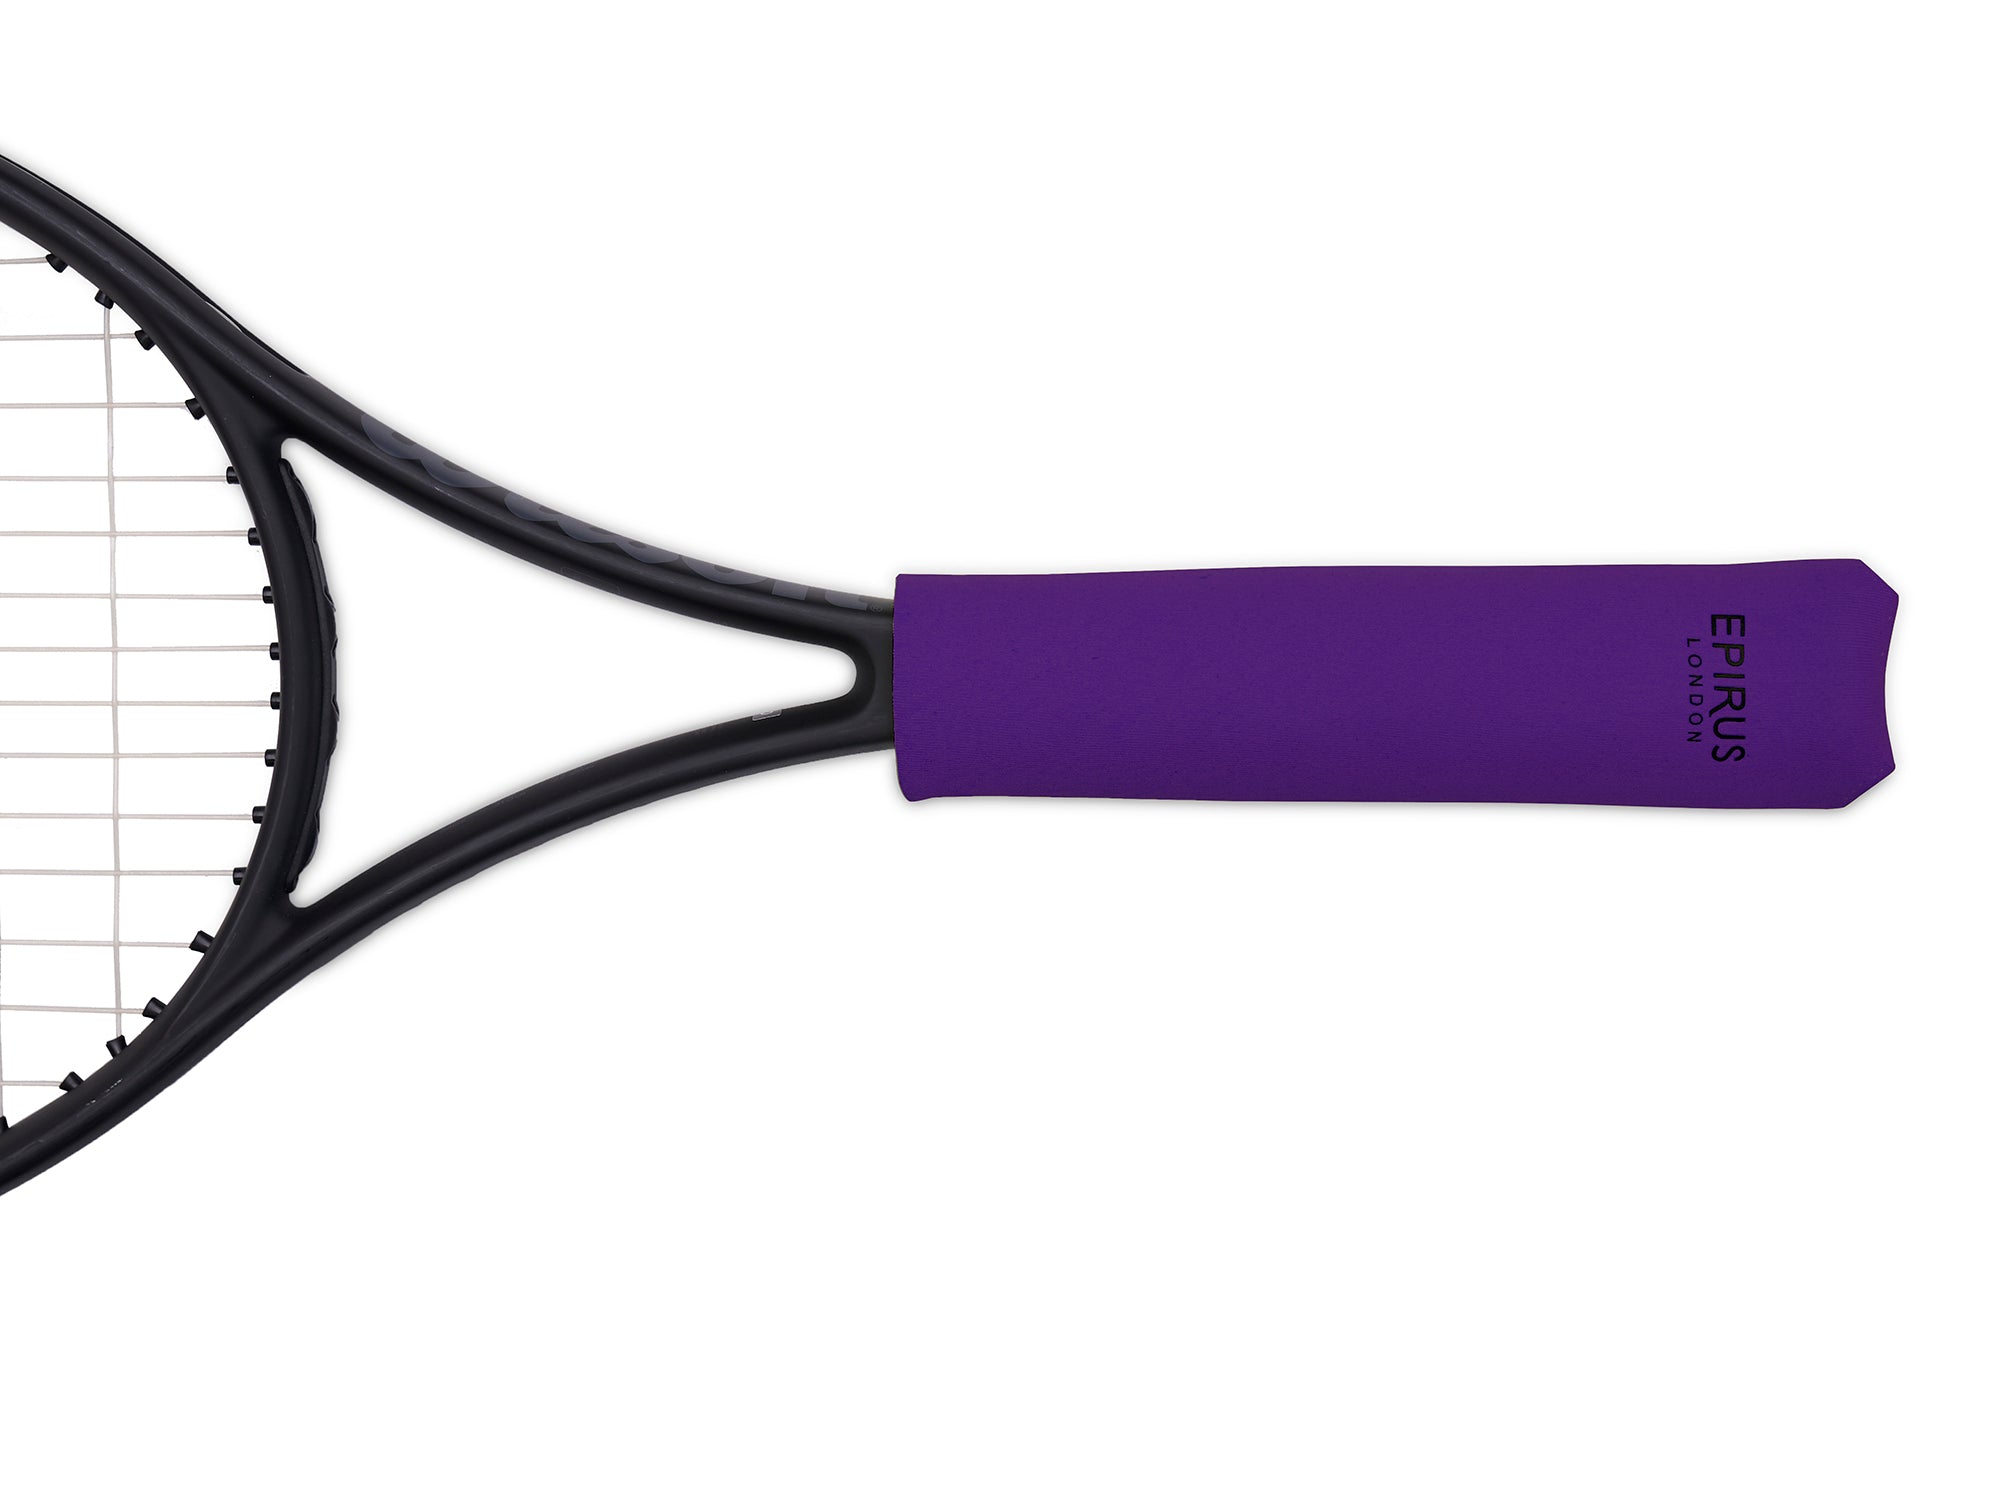 Neoprene Grip Covers  Keep Your Tennis Racket Handles Dry - Epirus London